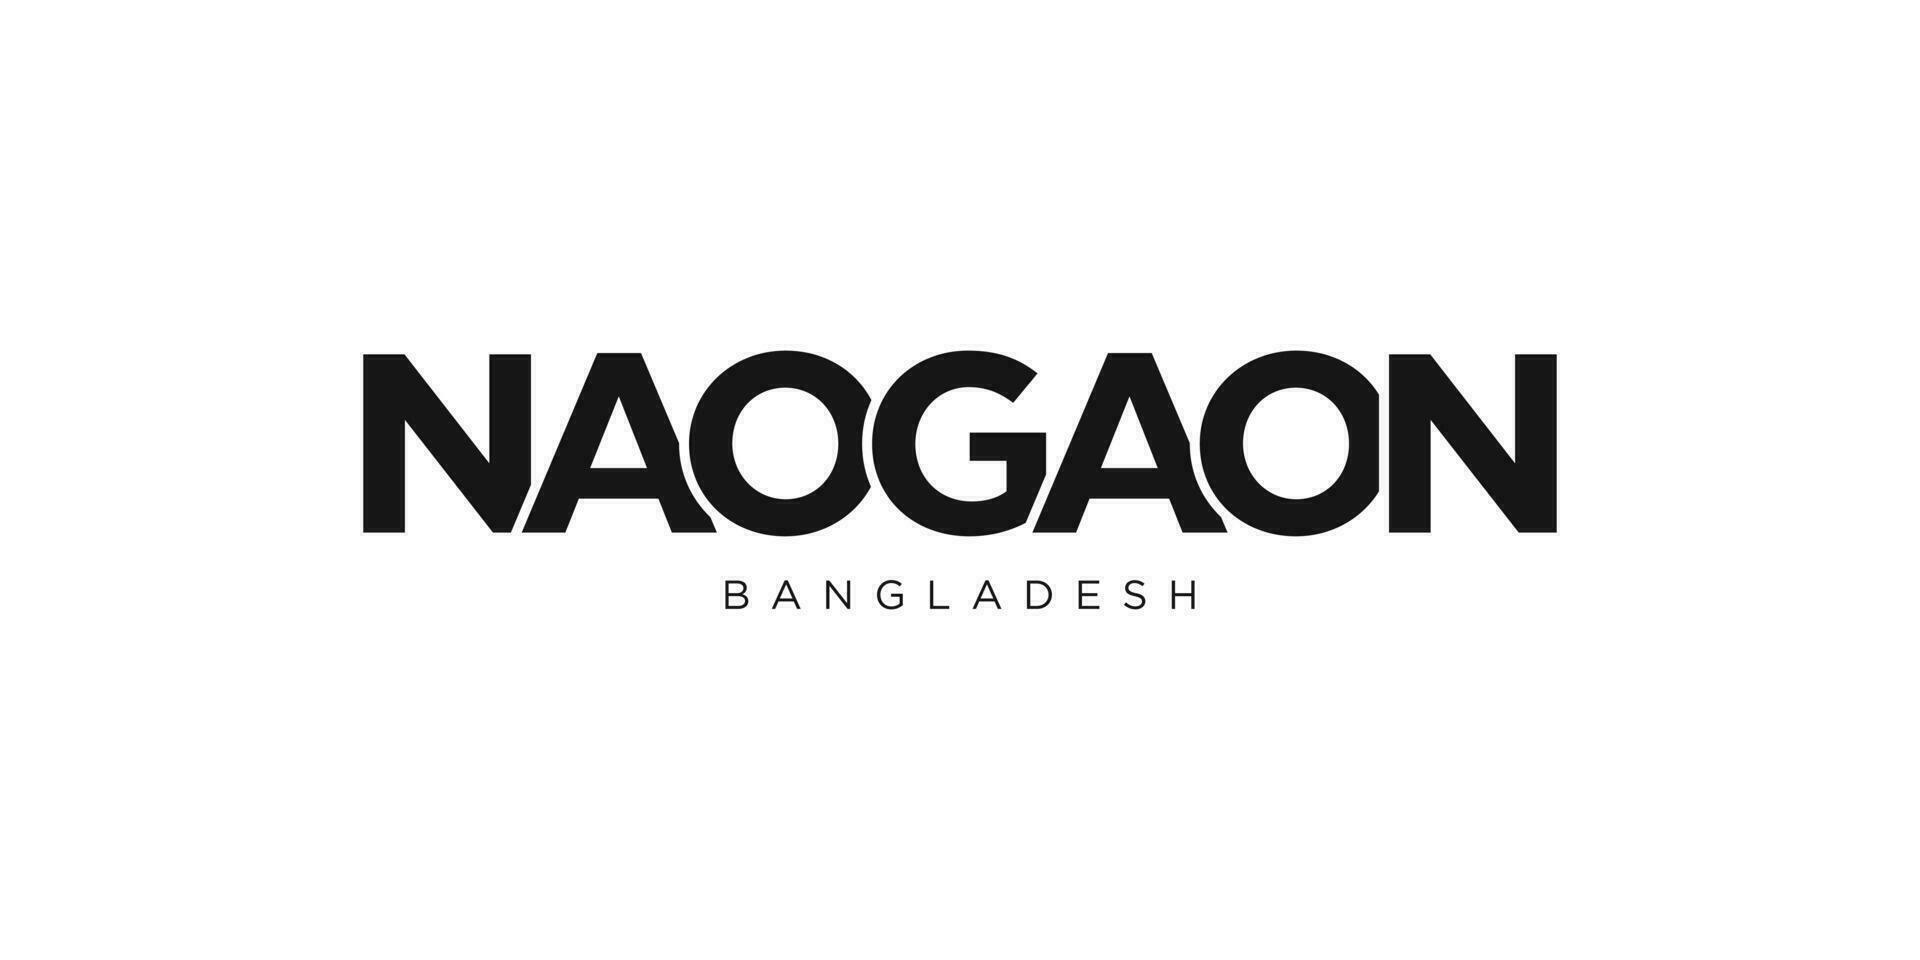 Naogaon dans le bangladesh emblème. le conception Caractéristiques une géométrique style, vecteur illustration avec audacieux typographie dans une moderne Police de caractère. le graphique slogan caractères.